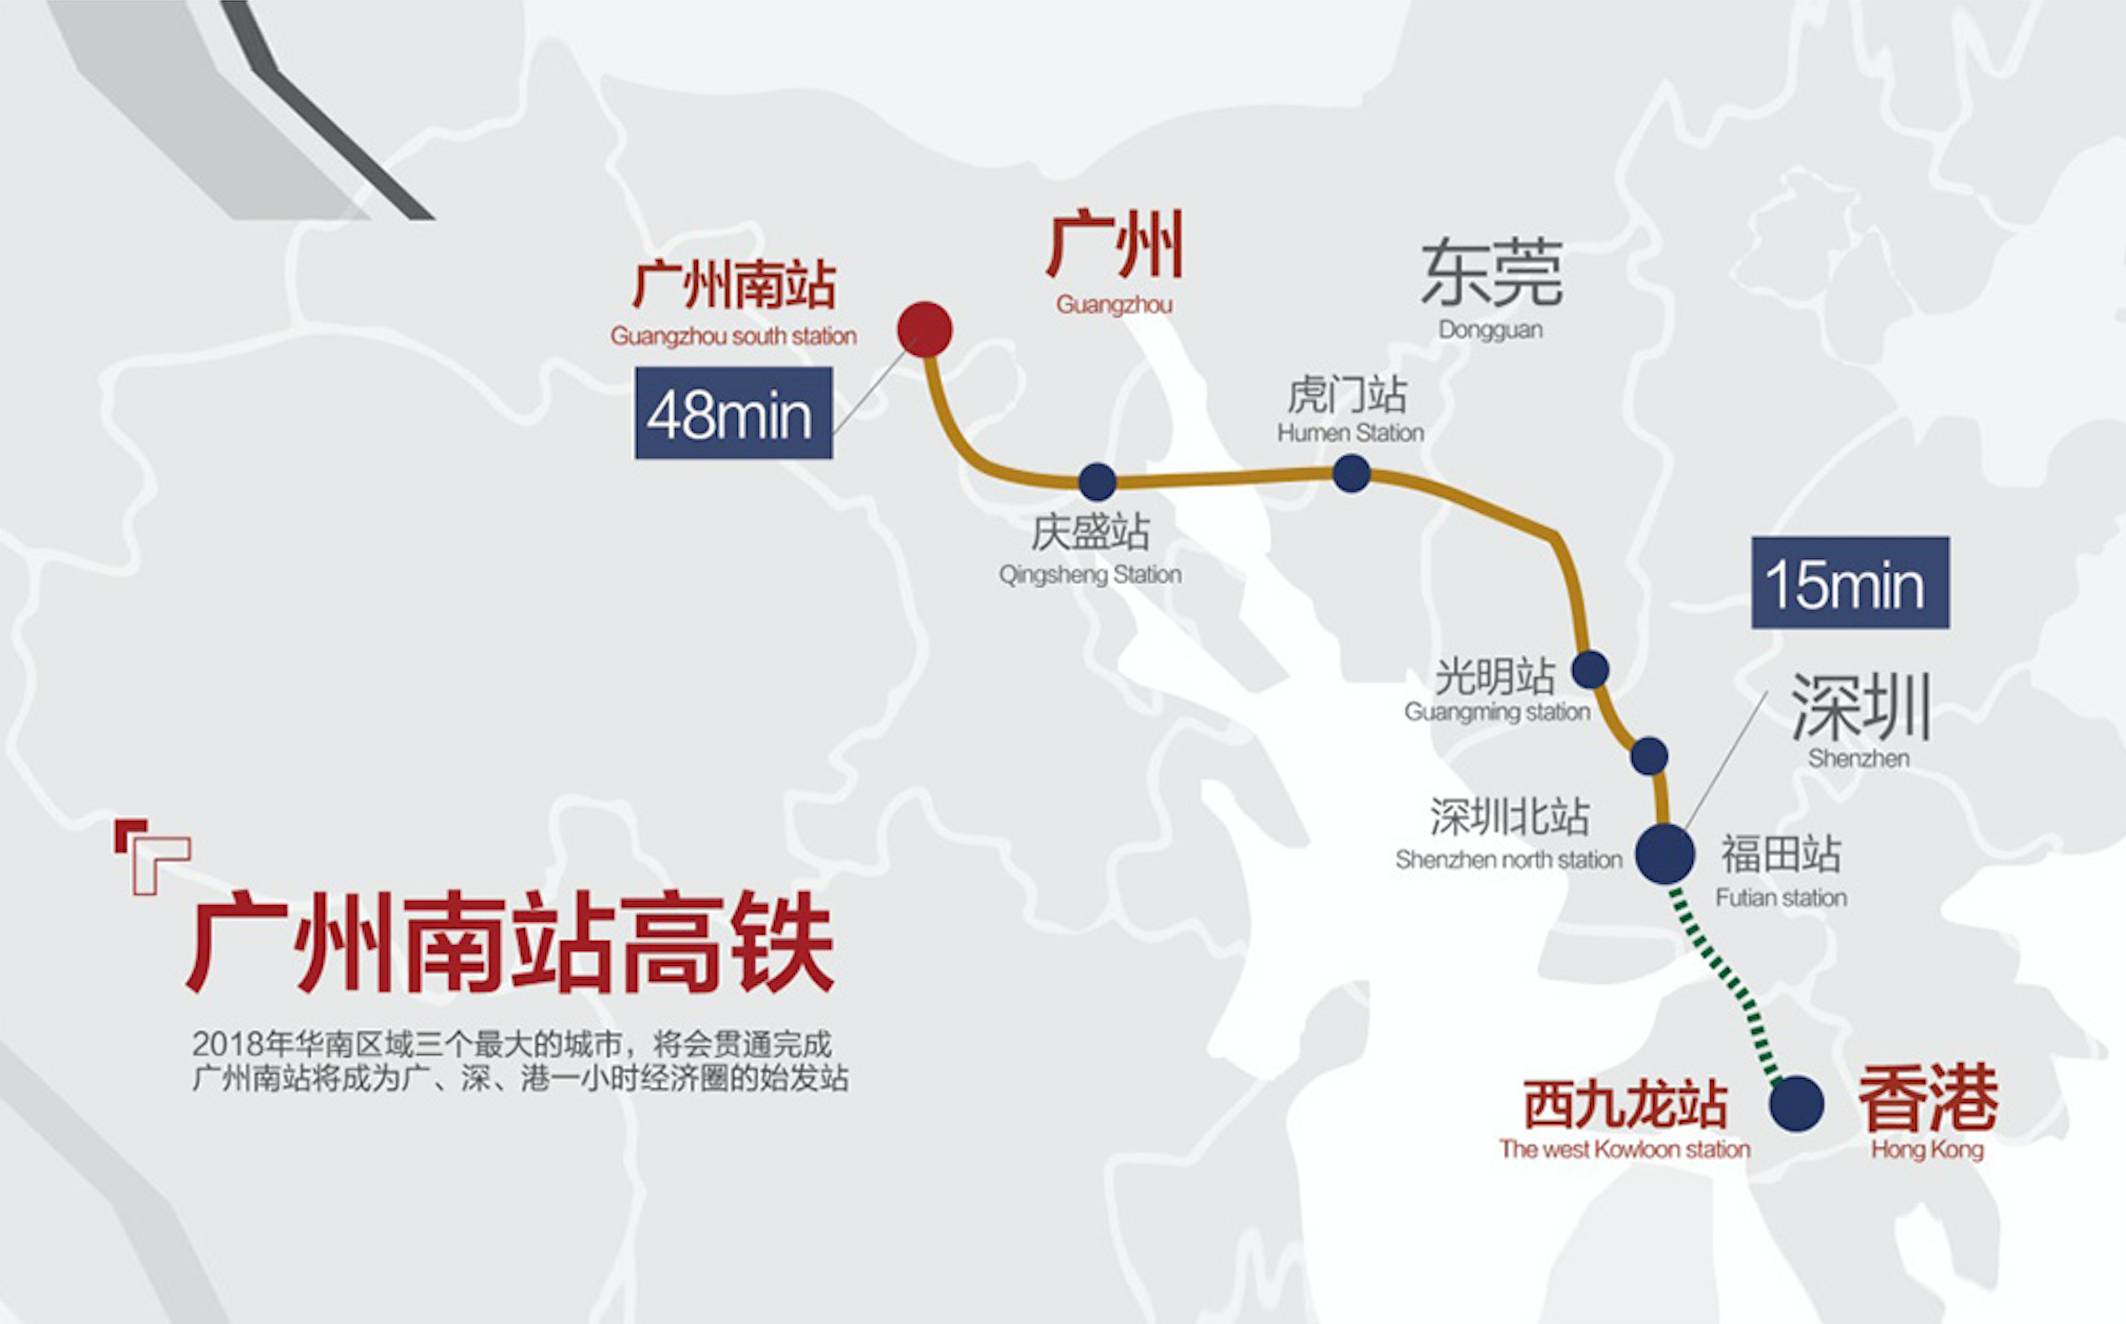 香港到深圳的交通方式 - 40分鐘抵達灣仔的跨境巴士